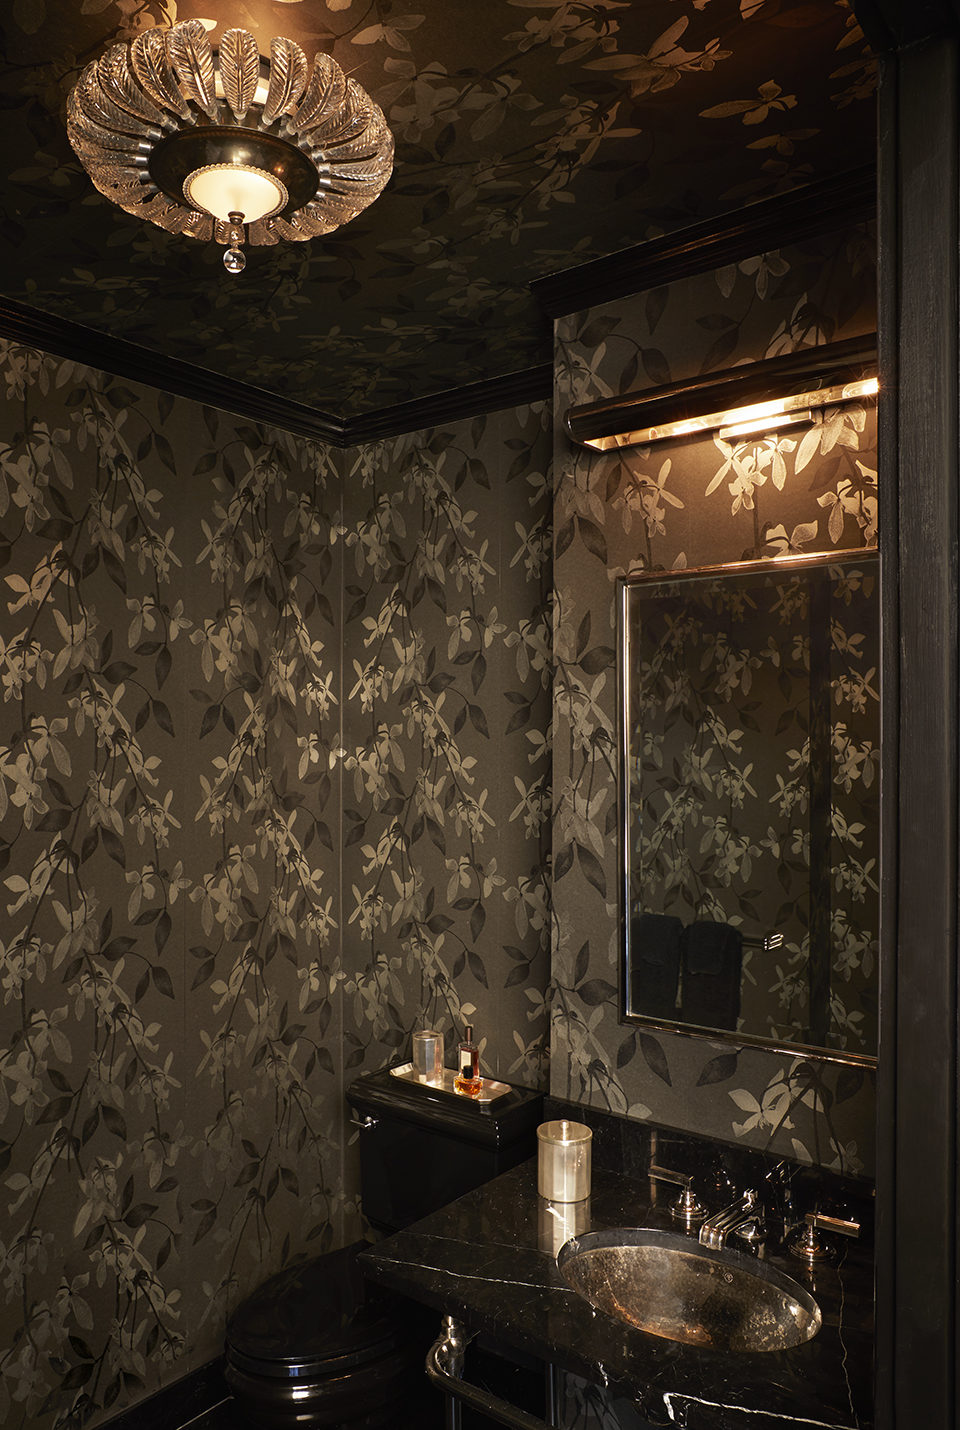 Modern sophisticated bathroom in dark tones